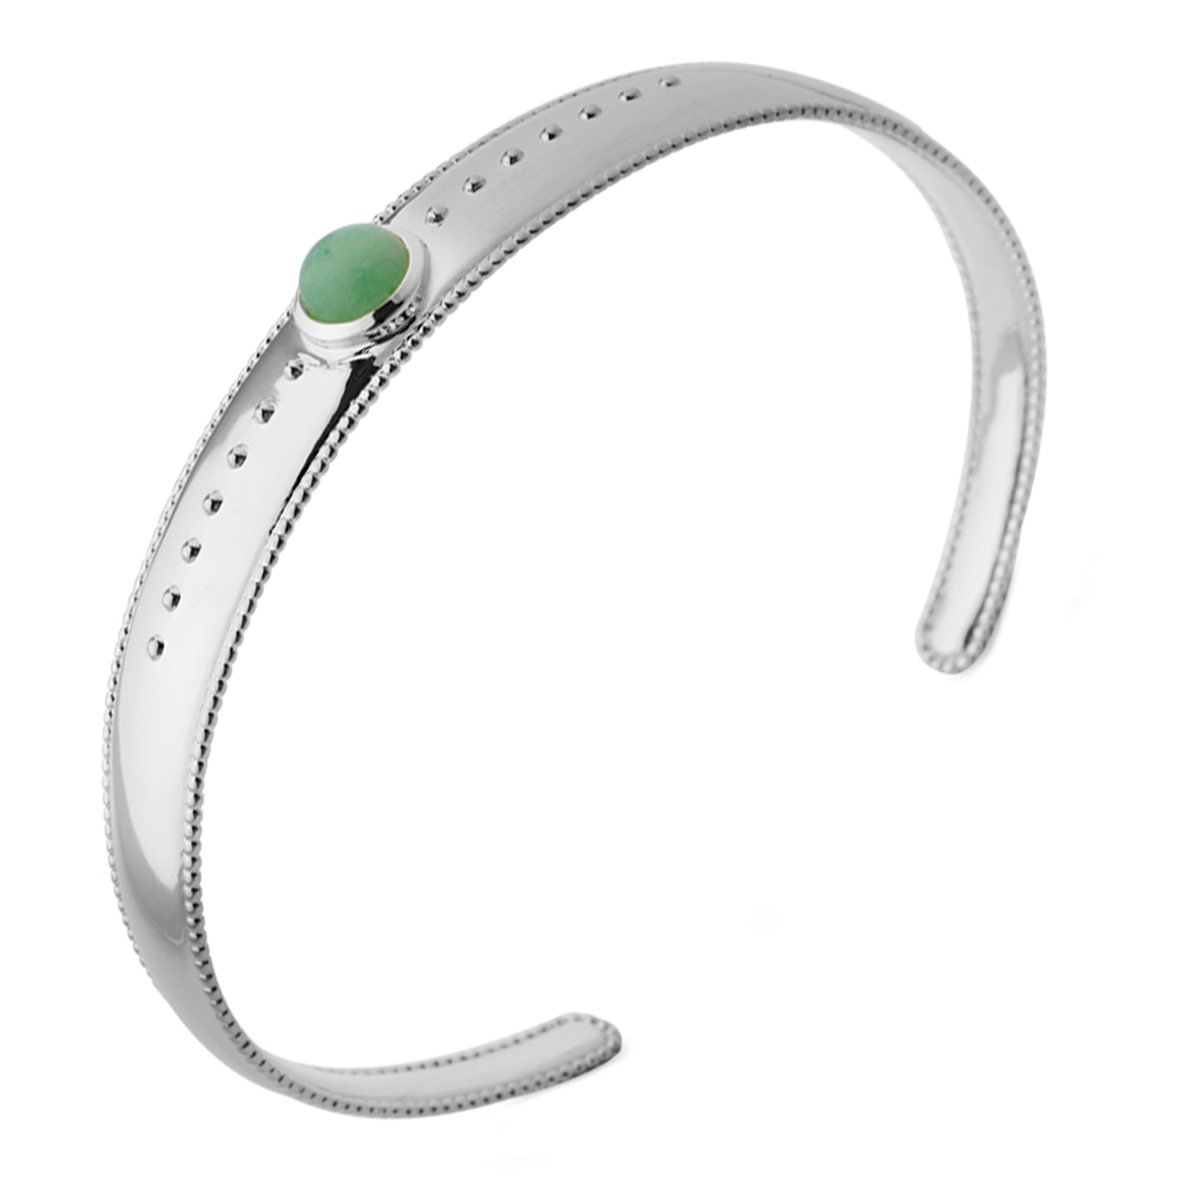 Bracelet Argent \'Cléopatra\' aventurine vert argenté (rhodié) - 58 mm 10 mm - [Q4153]